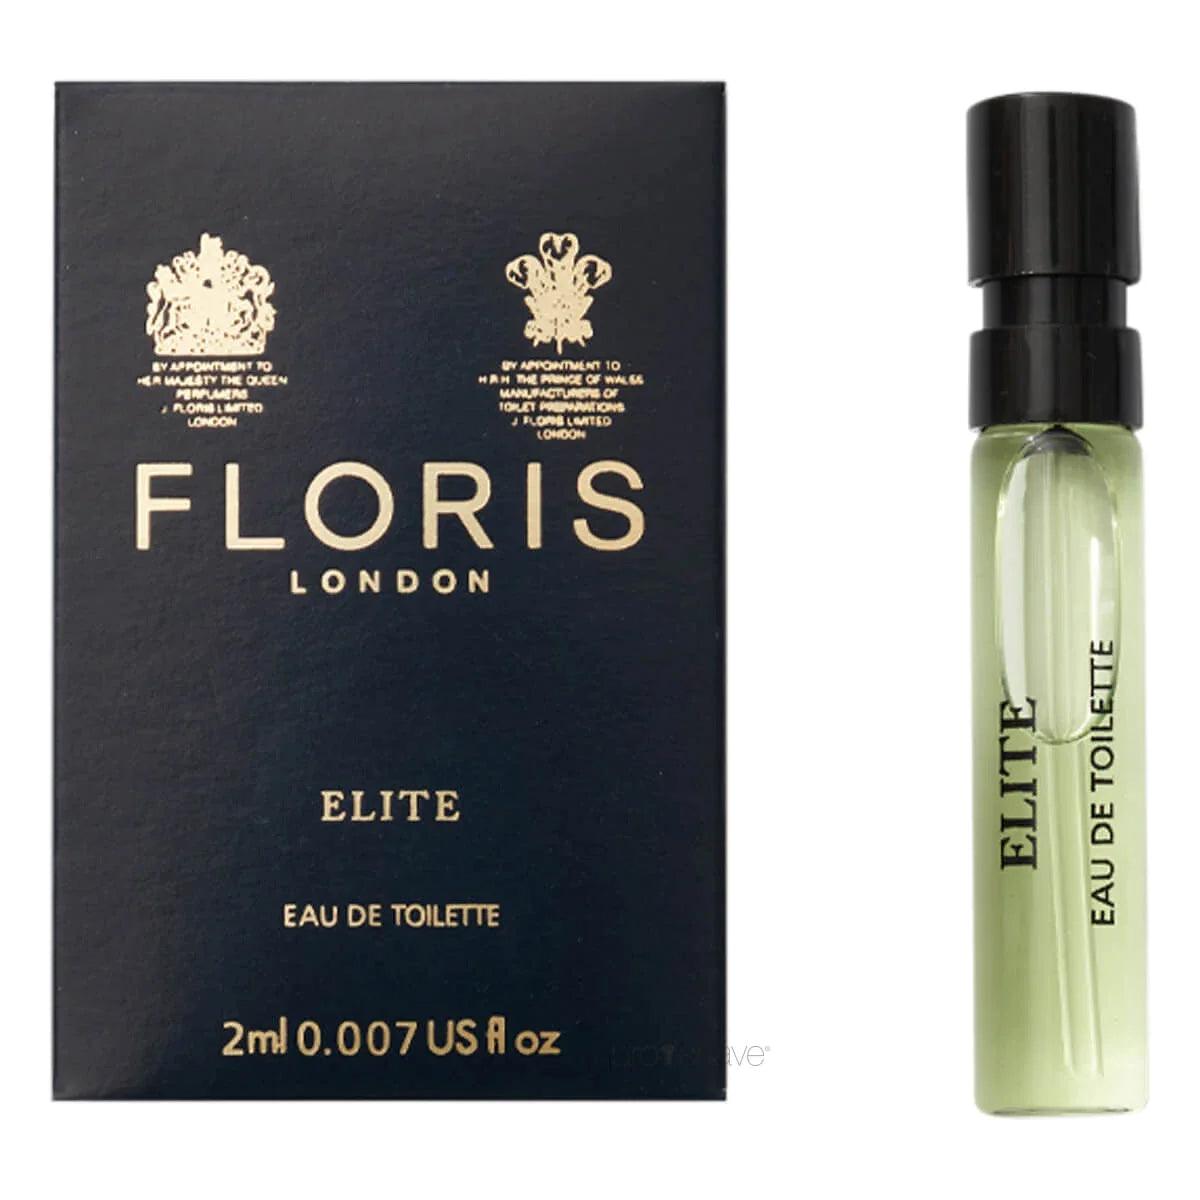 Floris Elite, Eau de Toilette, 2 ml | Parfyme | Floris London | JK SHOP | JK Barber og herre frisør | Lavepriser | Best